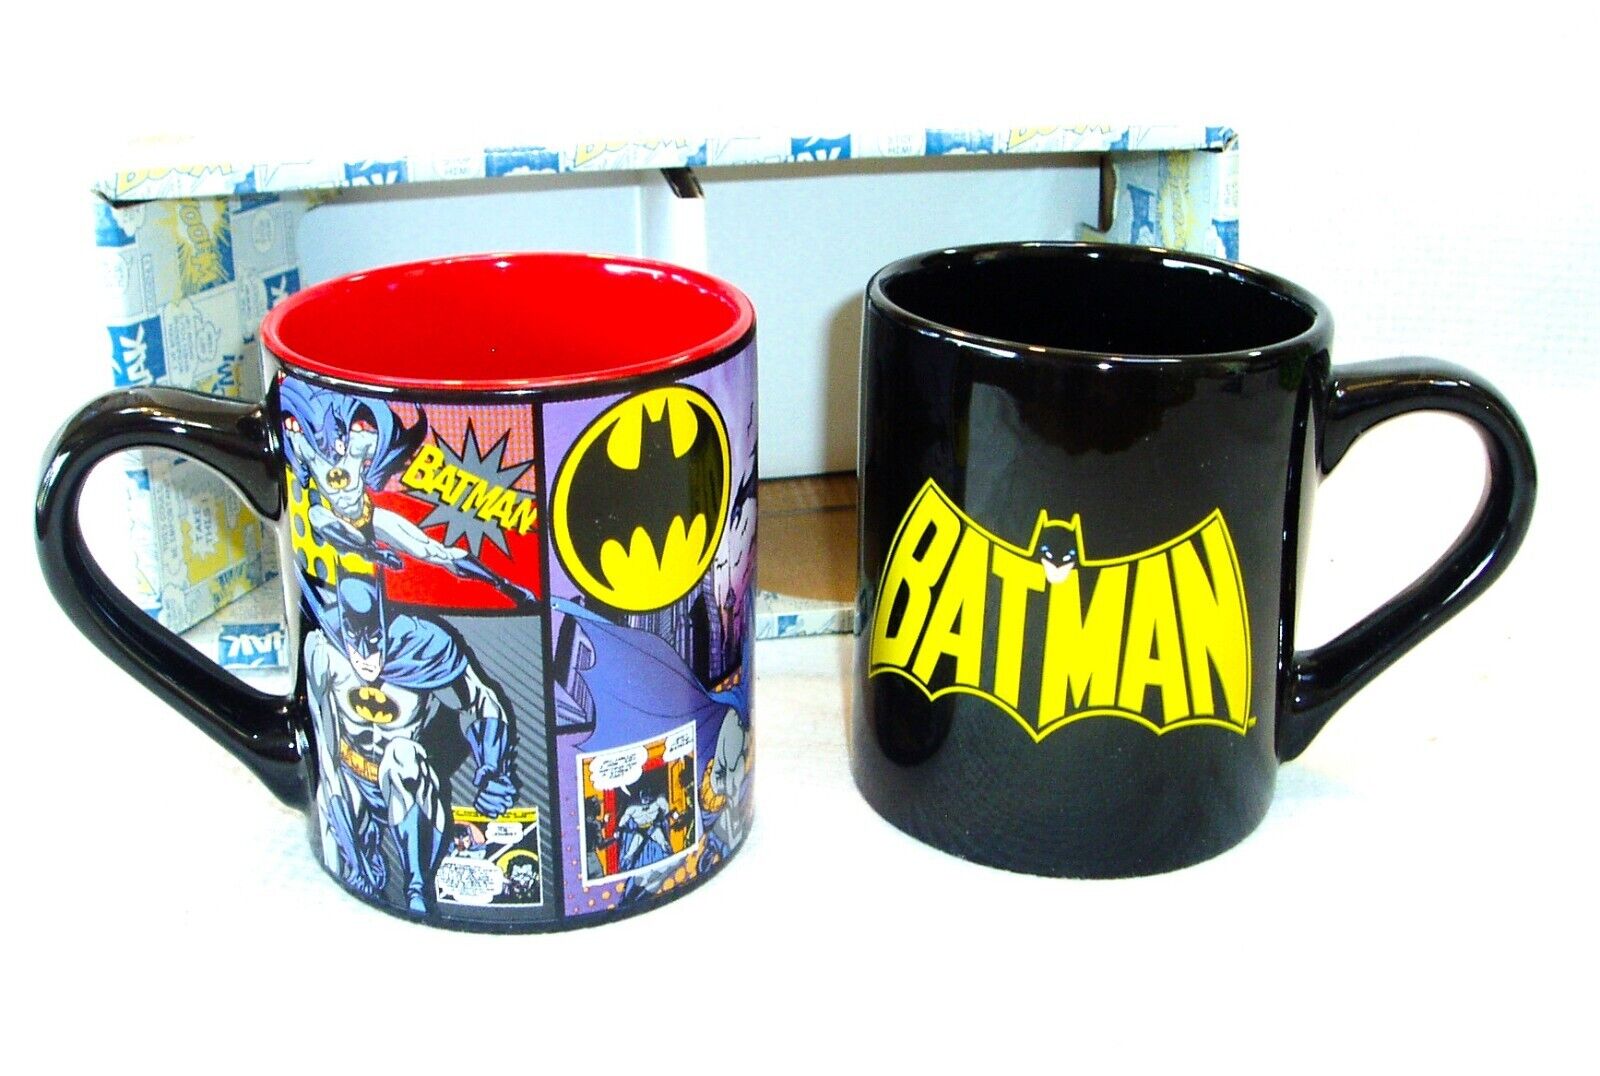 NEW IN ORIGINAL BOX DC COMICS BATMAN CERAMIC SET OF 2 COFFEE MUGS